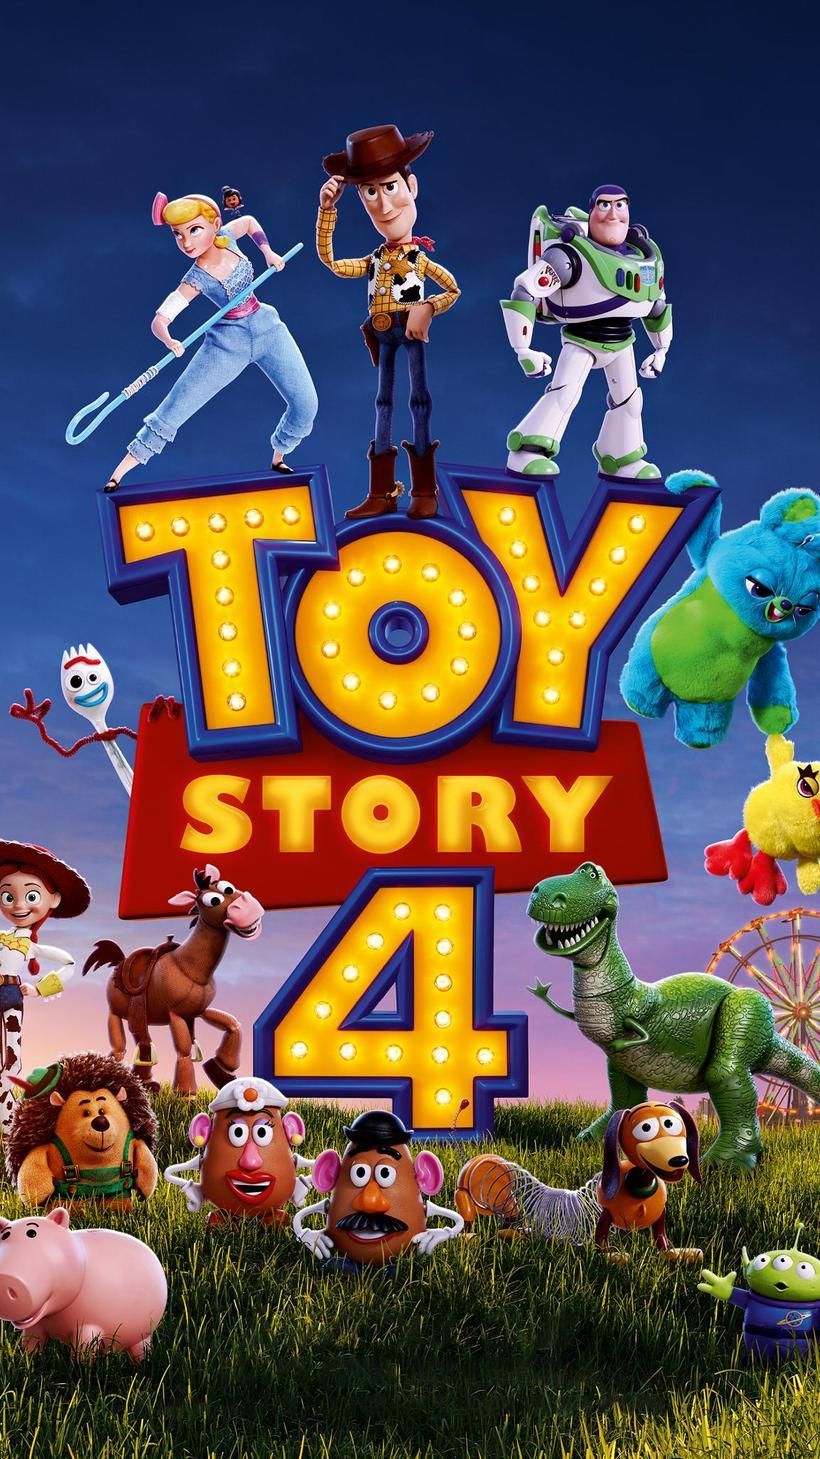 Toy Story 4 (2019) Fondo de pantalla del teléfono en 2019 | Disney | Película de Disney